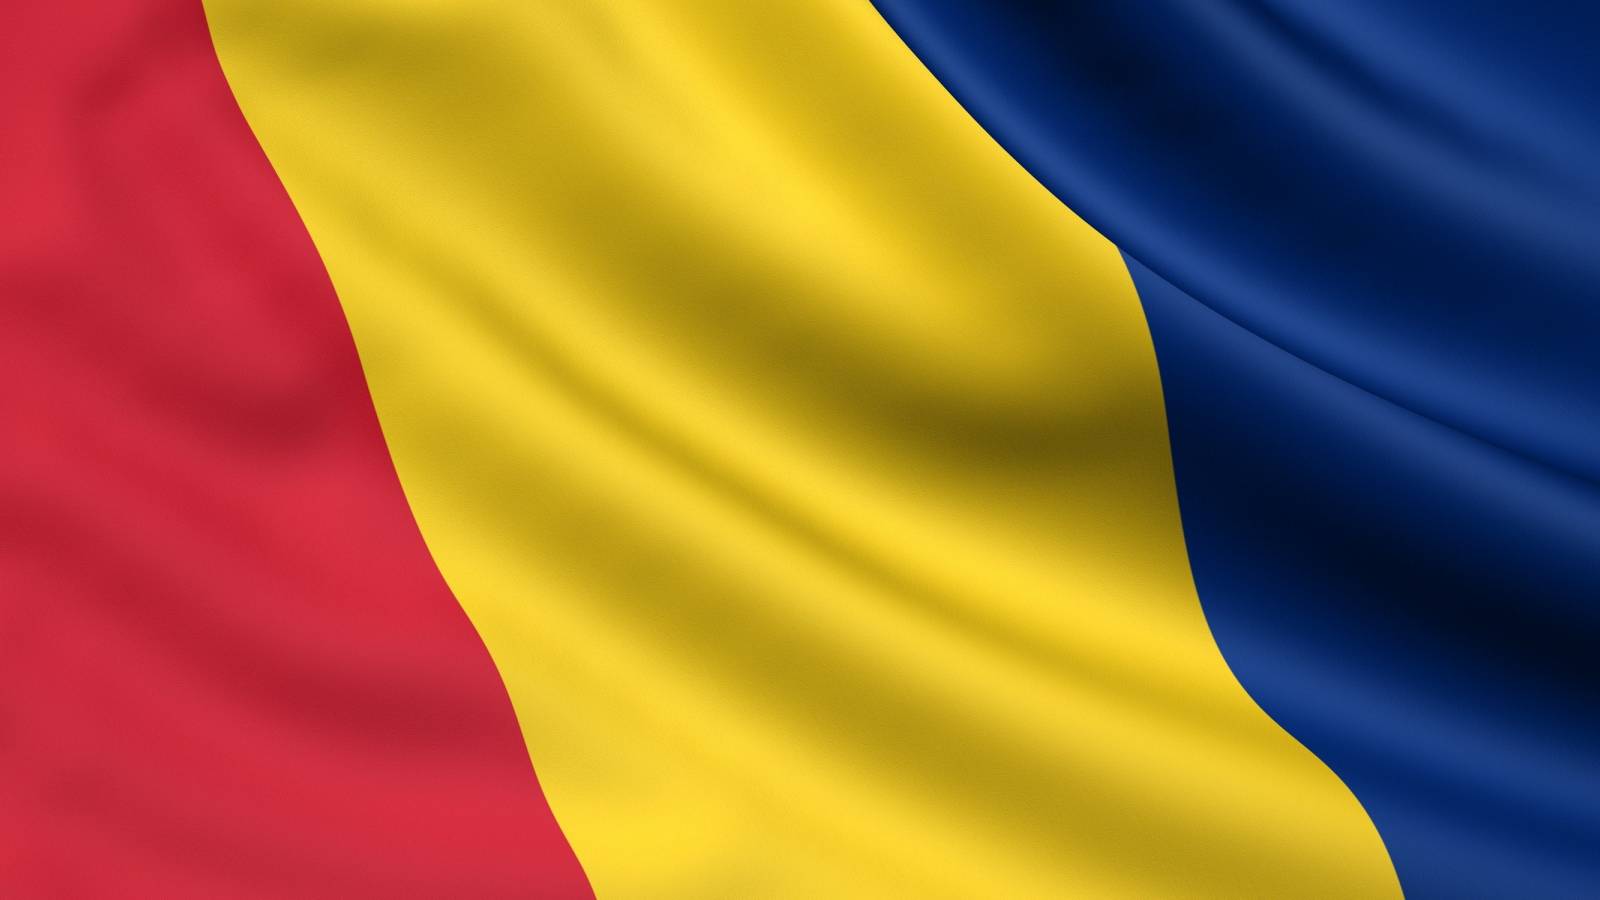 Vain 14.372 24 romanialaista rokotettiin viimeisen XNUMX tunnin aikana Romaniassa